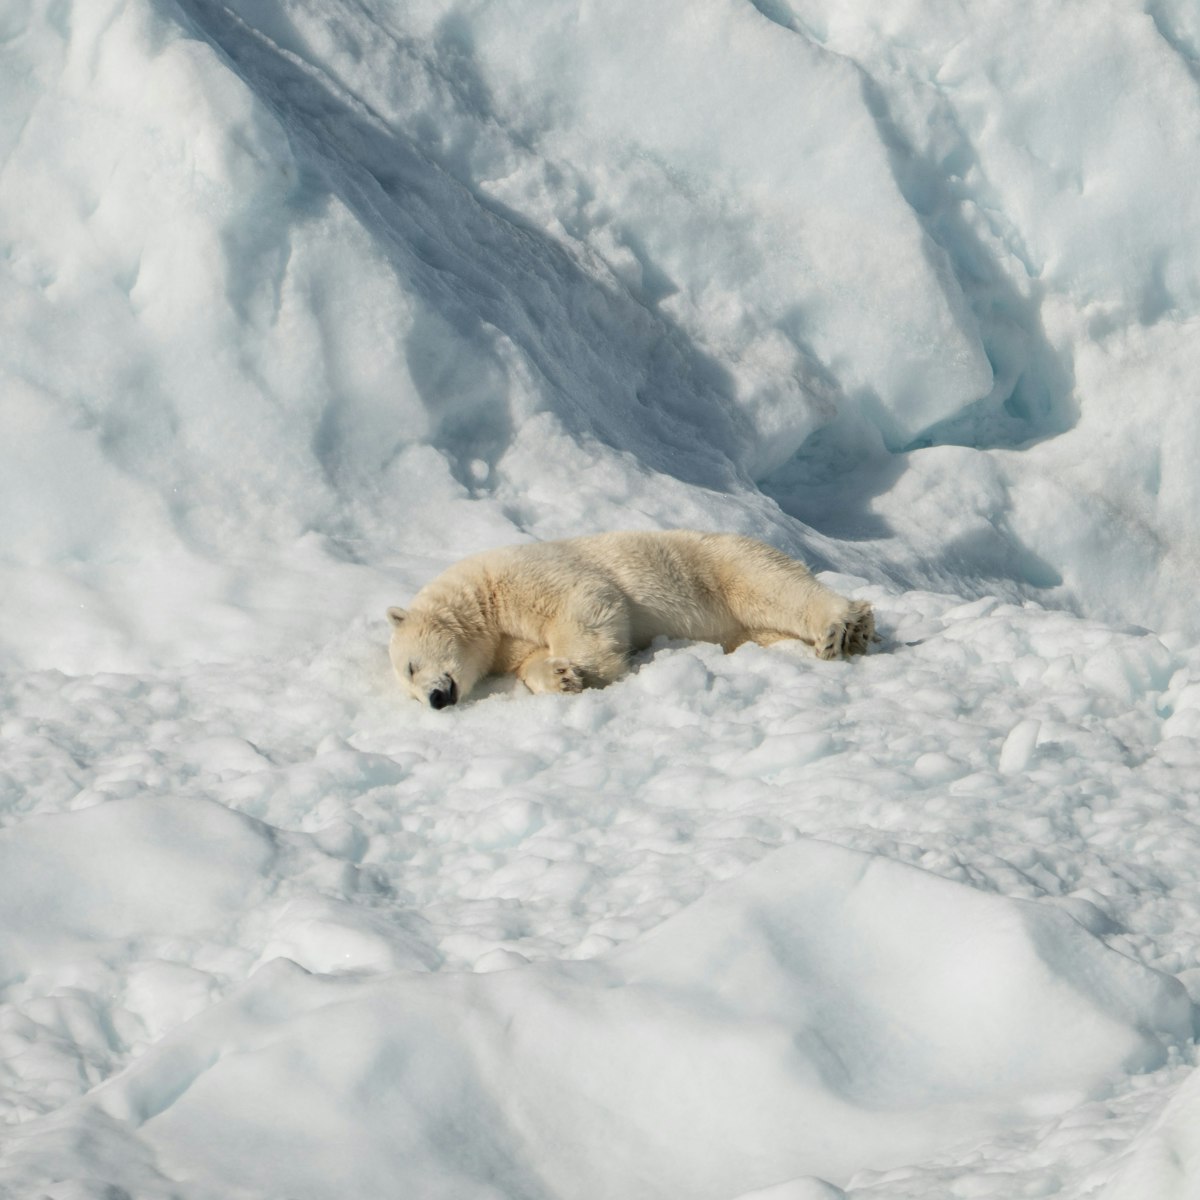 The Ice Age Legacy: Polar Bear's Evolutionary Story